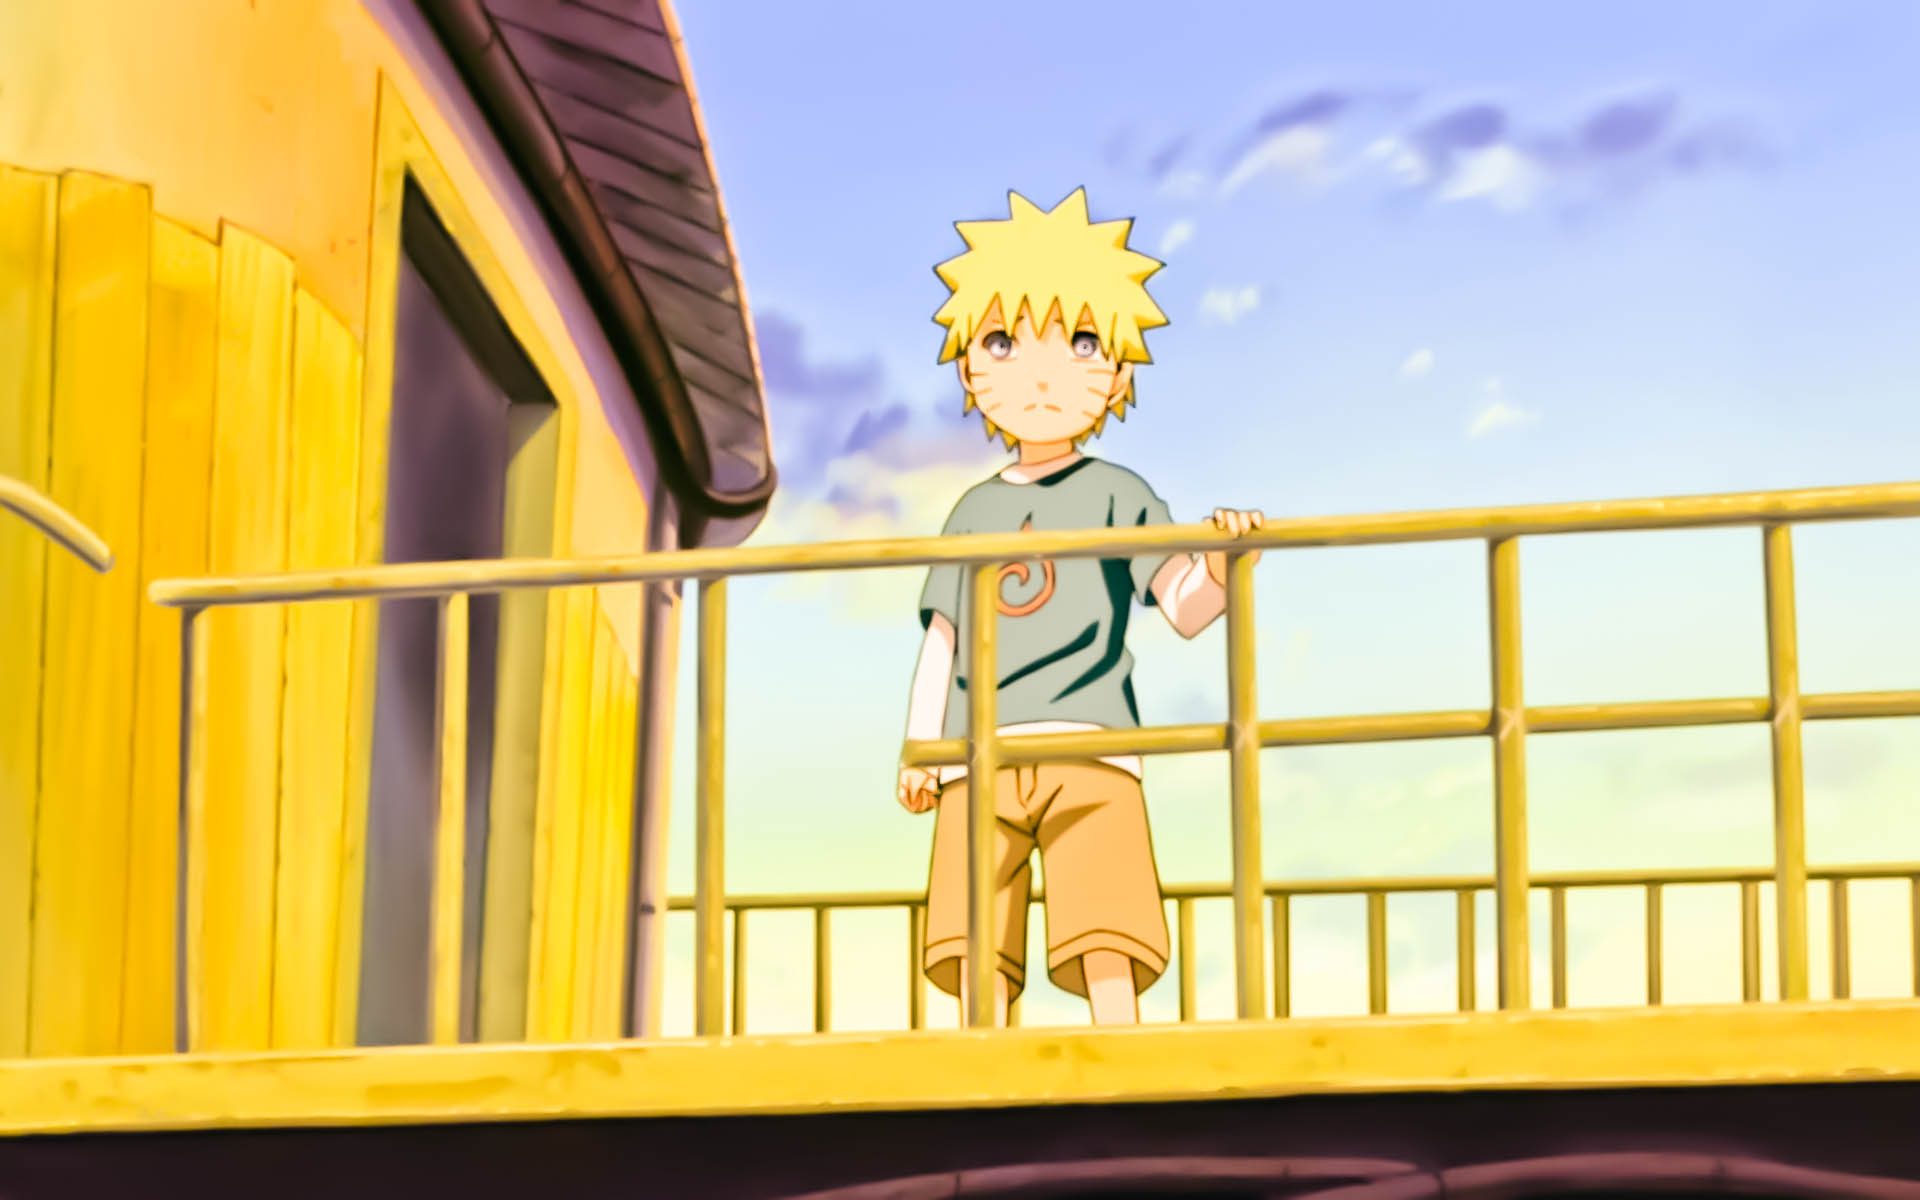 The Last Naruto the Movie: Naruto & Hinata's Kids Bolt and Himawari Teaser  Trailer ザ・ラスト‐ナルト・ザ・ムービー‐ 